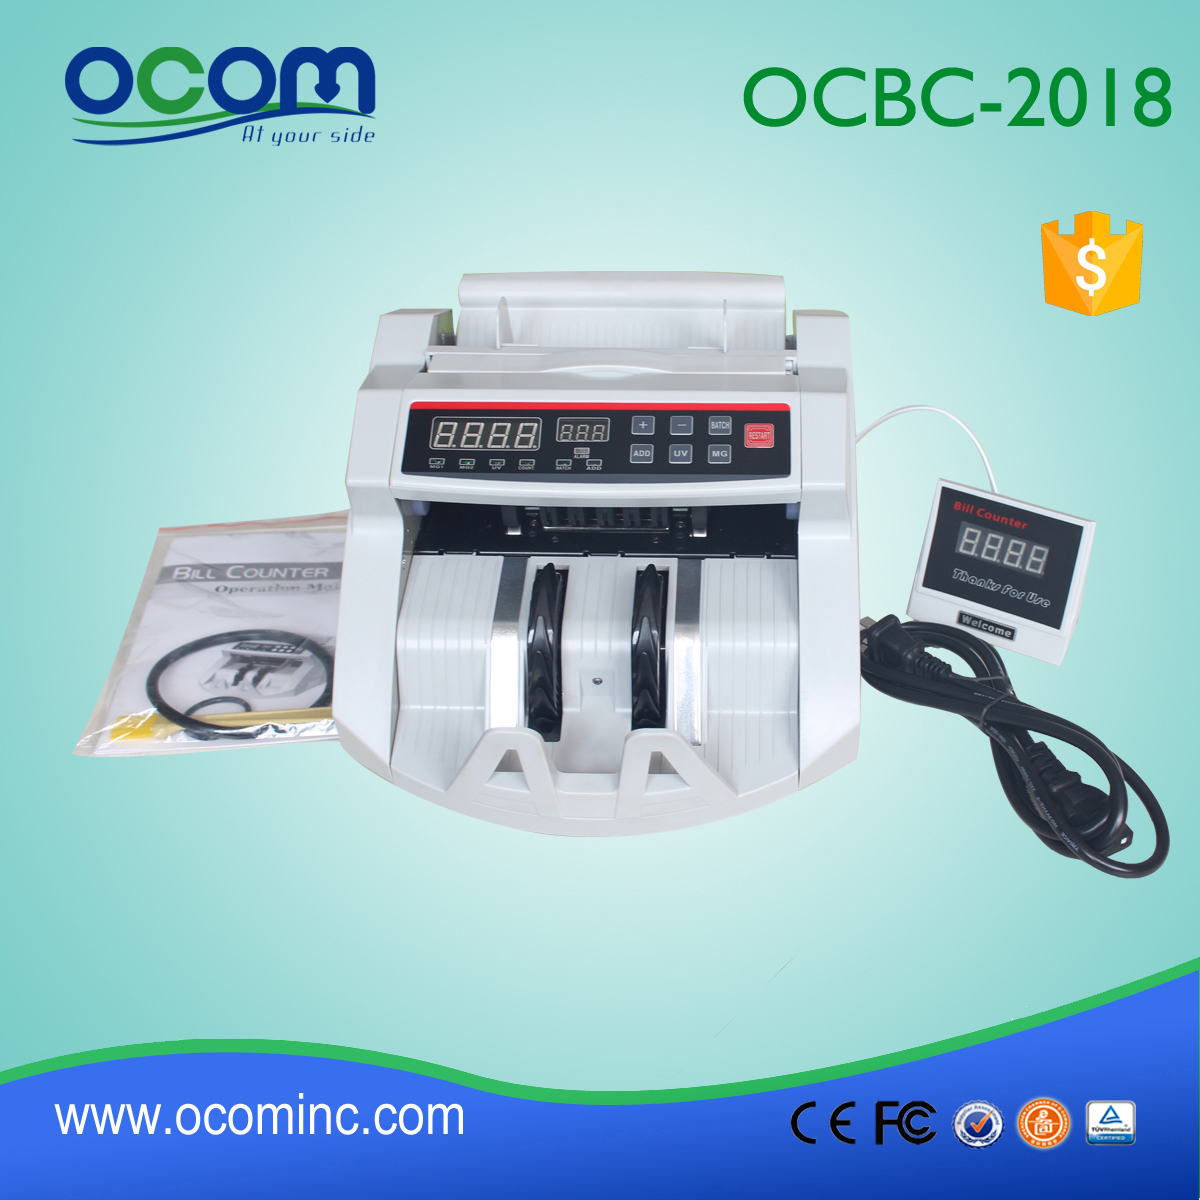 Macchina per il conteggio delle fatture in contanti in contanti OCBC-2108